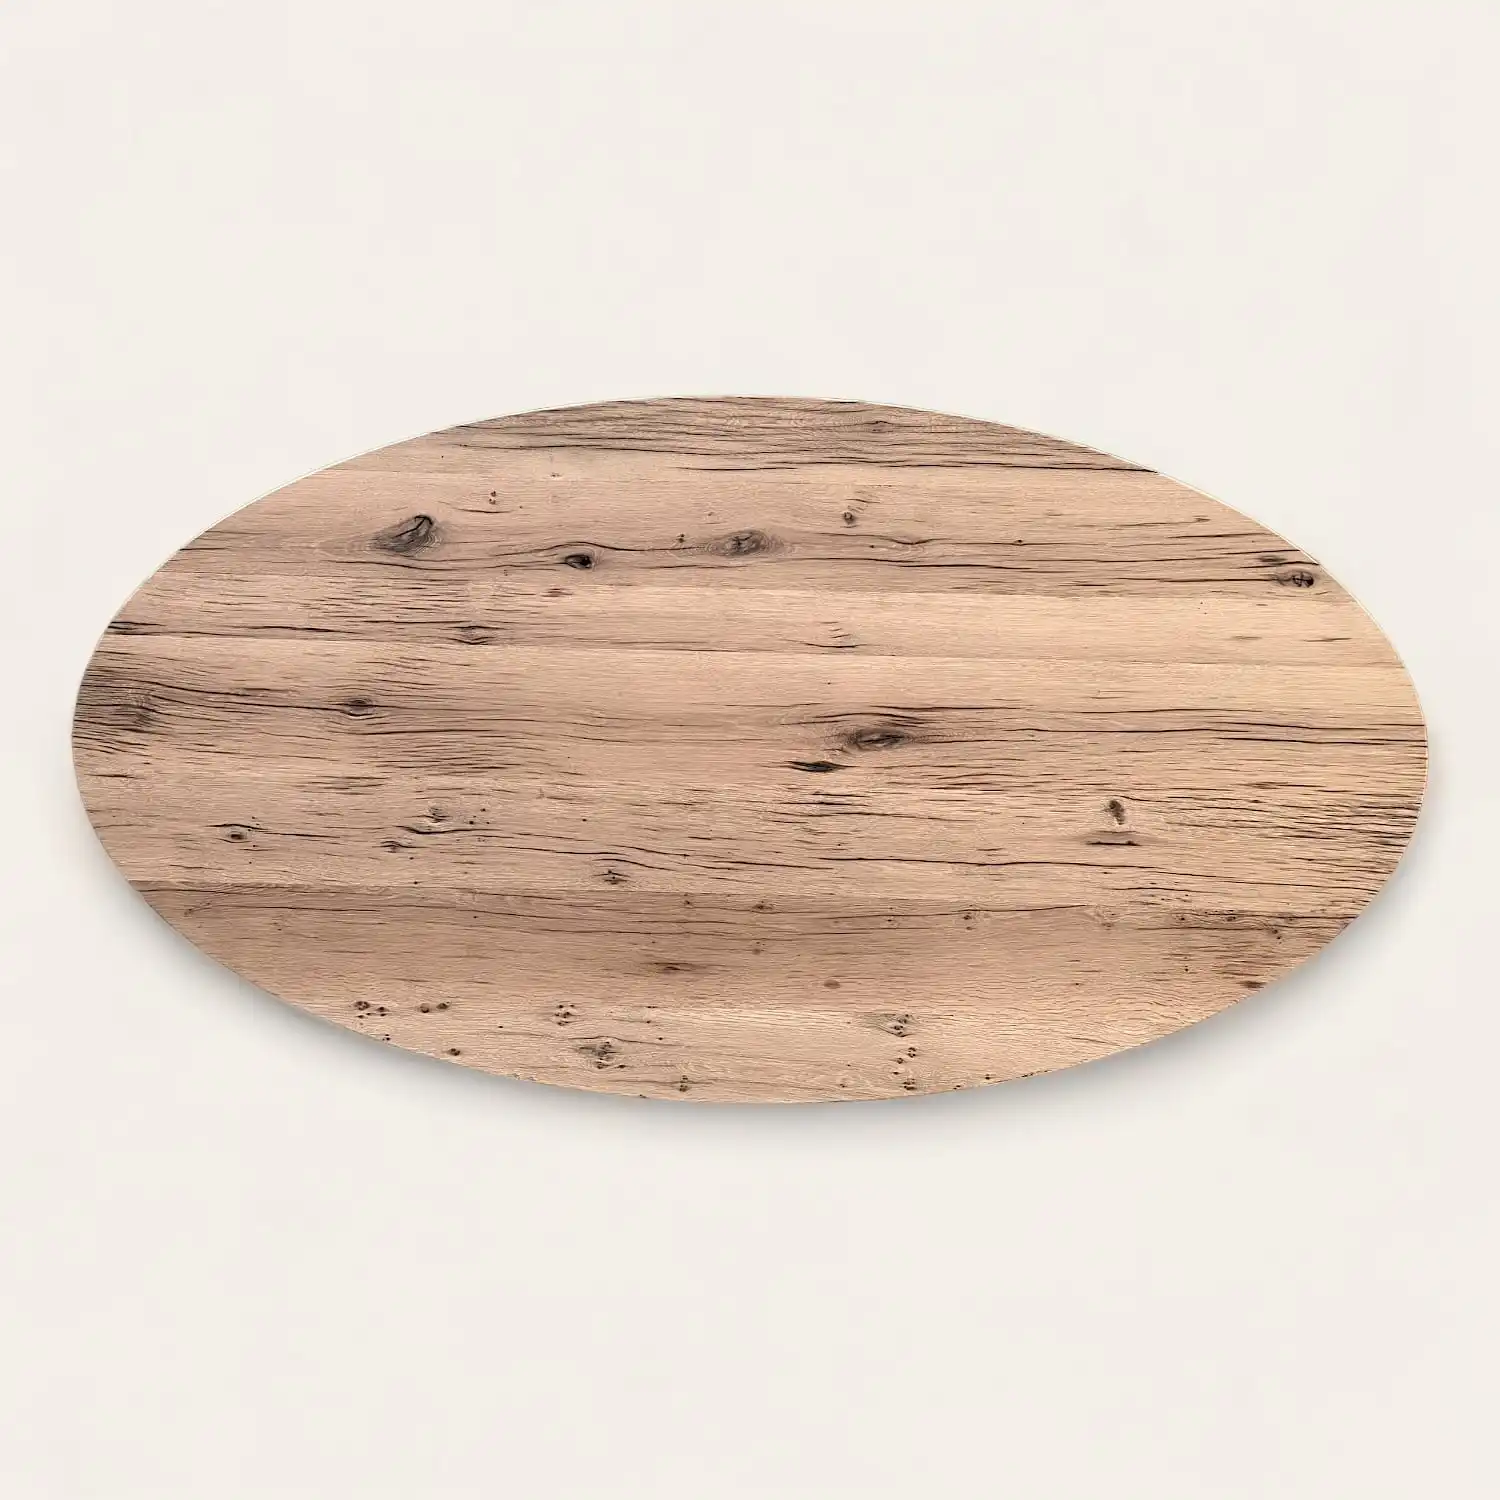  Une assiette ovale en bois rustique sur une surface blanche. 